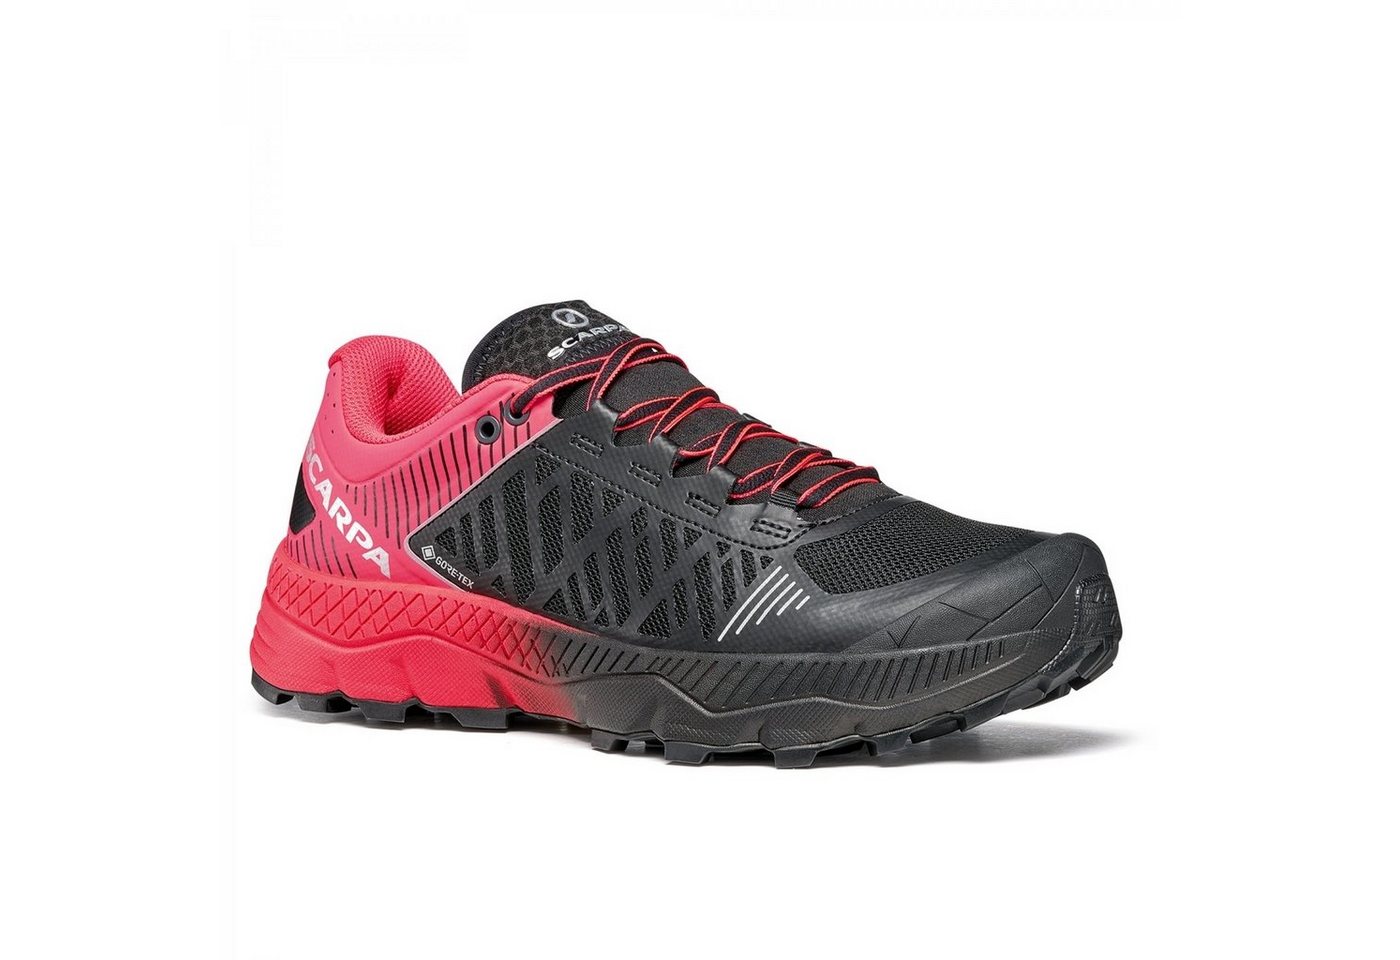 Scarpa Spin Ultra GTX Damen Trailrunningschuh rosa/schwarz Laufschuh von Scarpa